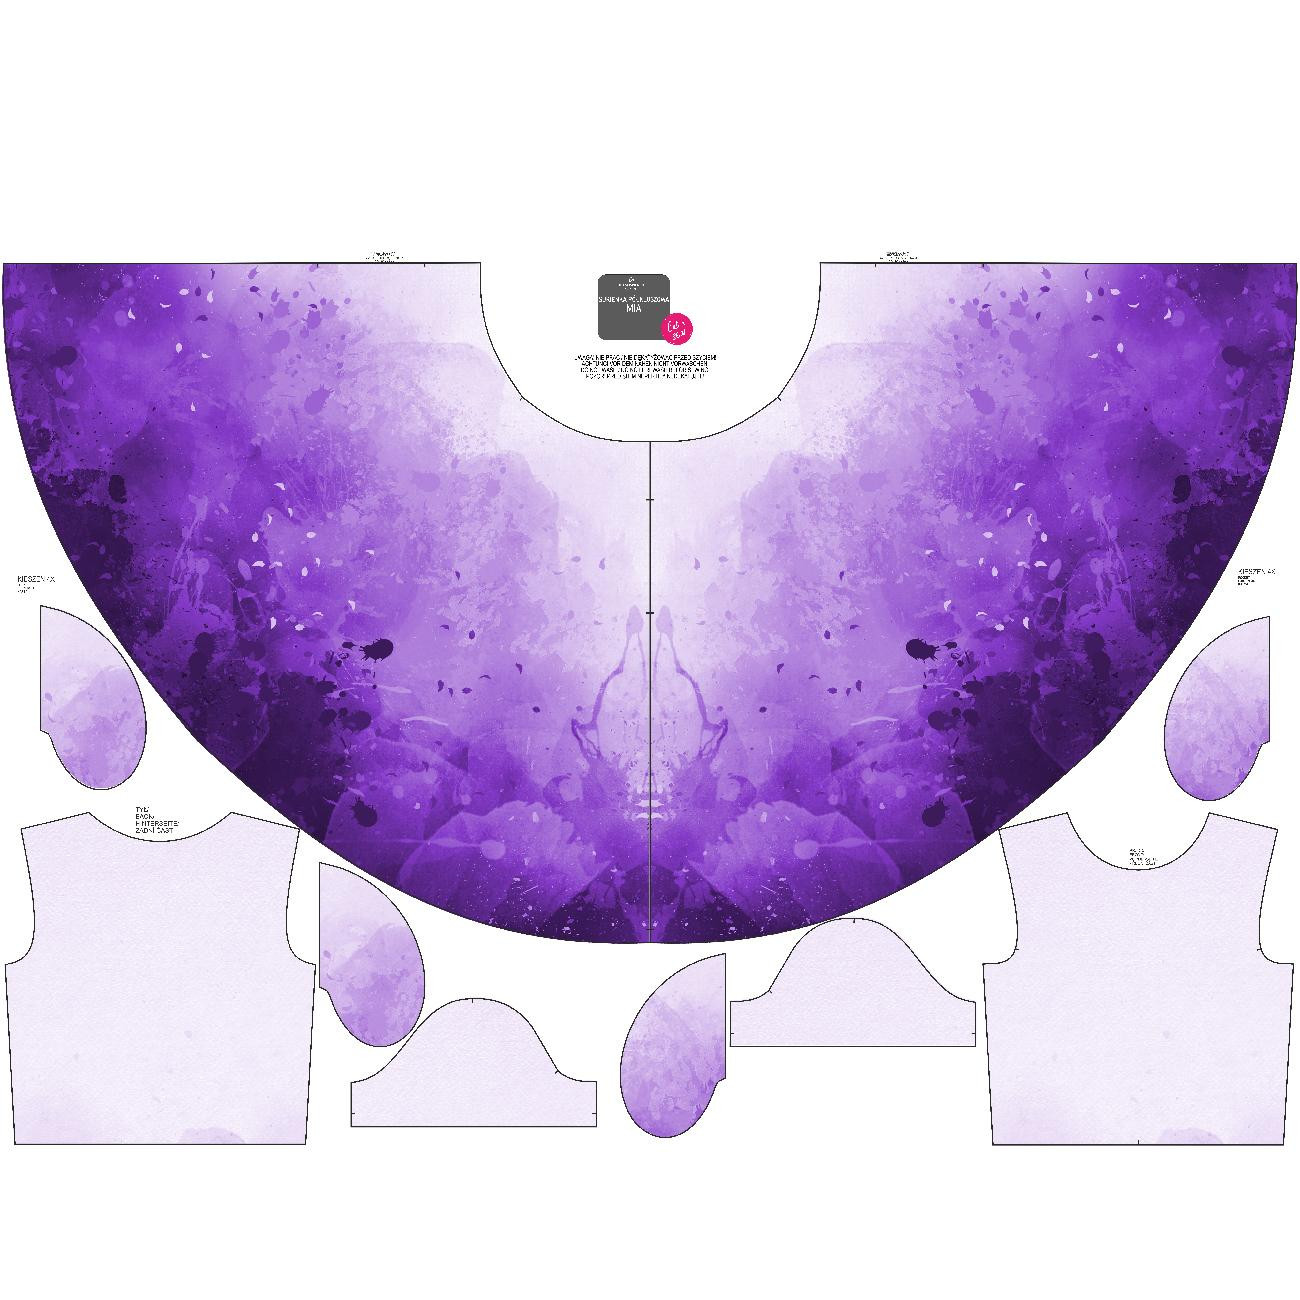 KID'S DRESS "MIA" - SPECKS (purple) - sewing set